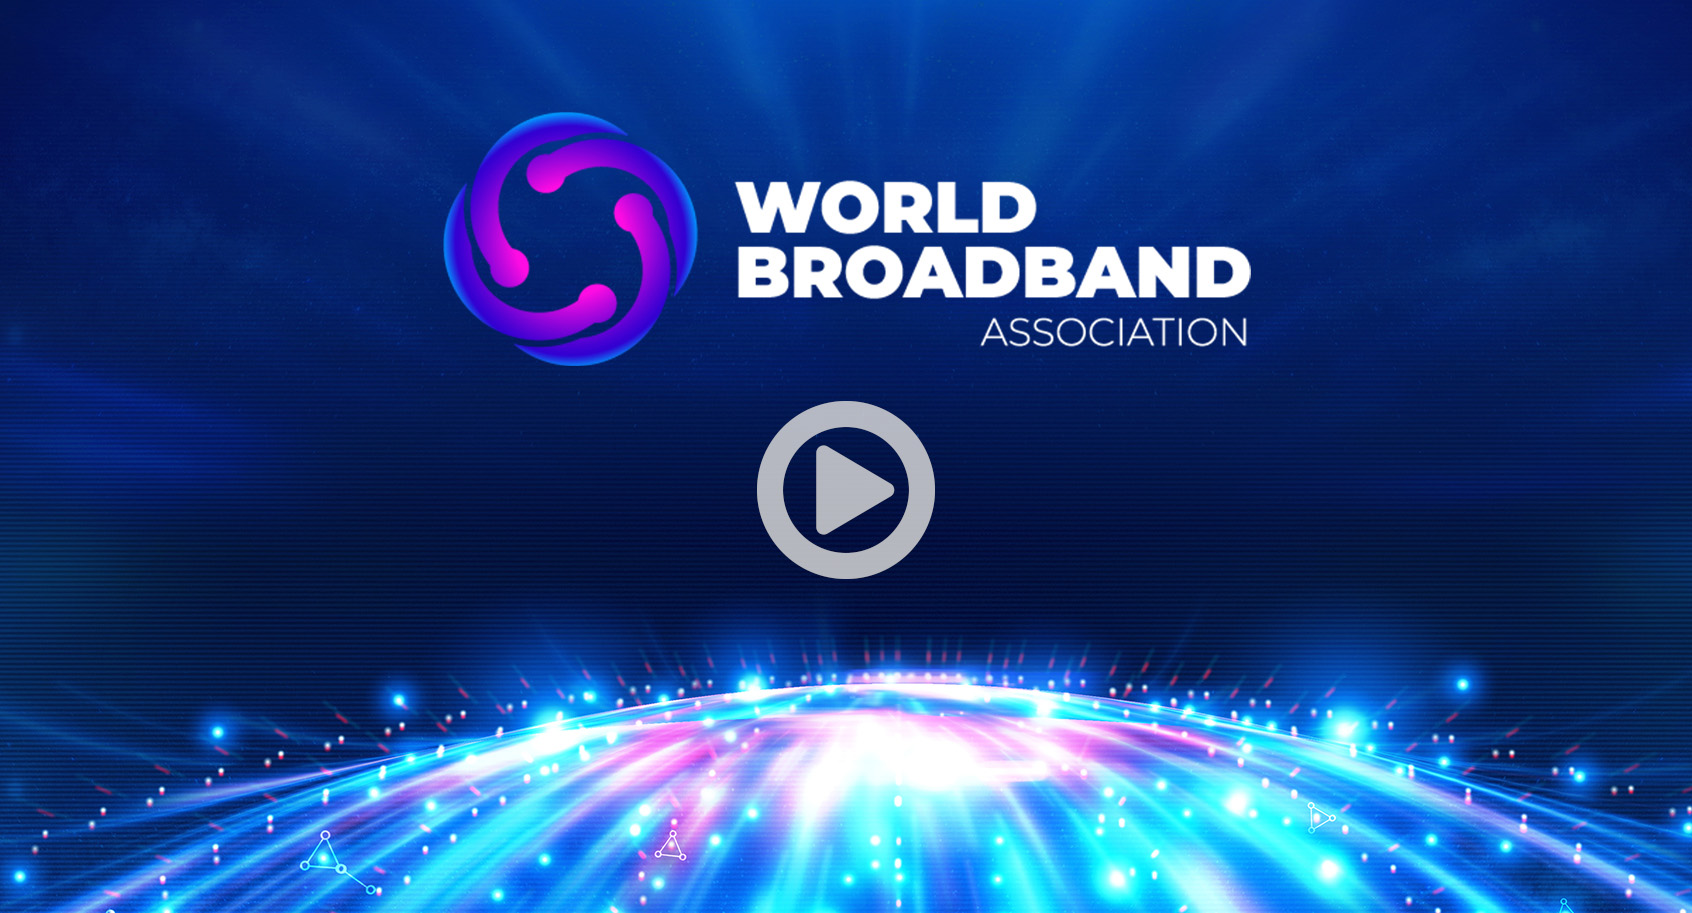 World Broadband Association - World Broadband Association